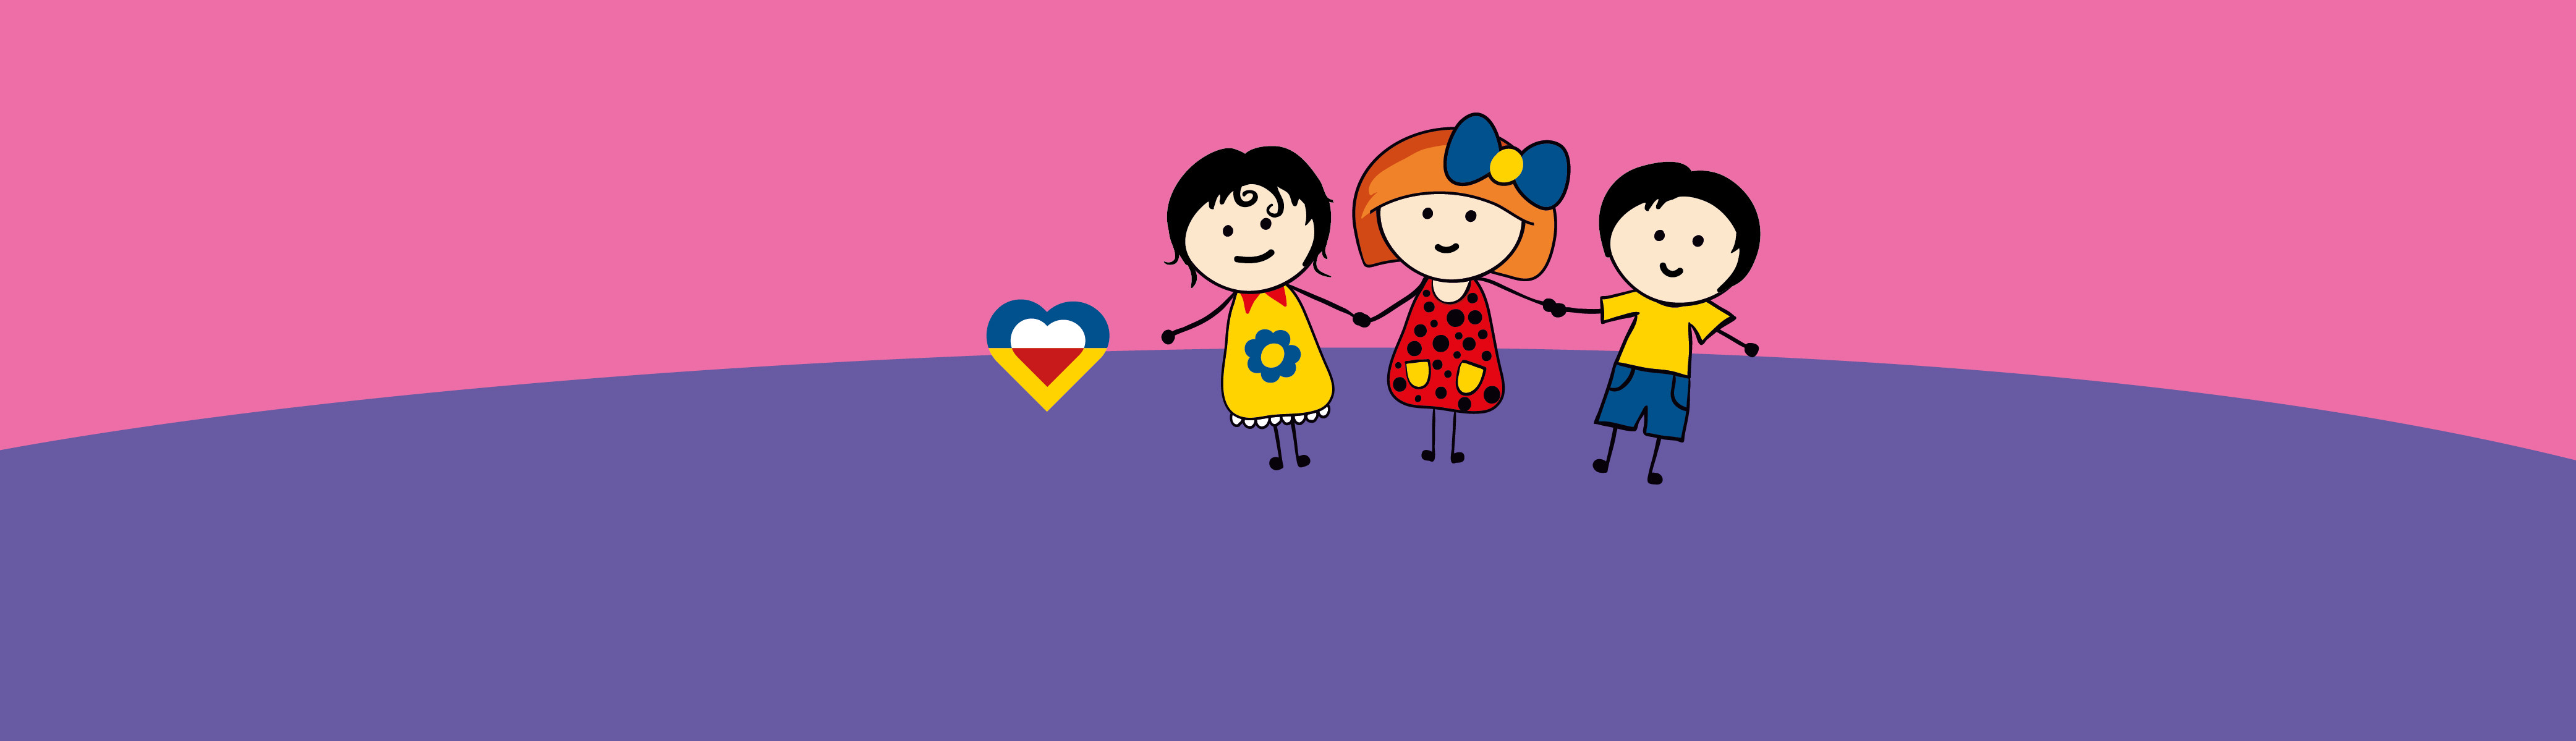 Ігри і весело для дітей – zajęcia animacyjne dla dzieci z Ukrainy